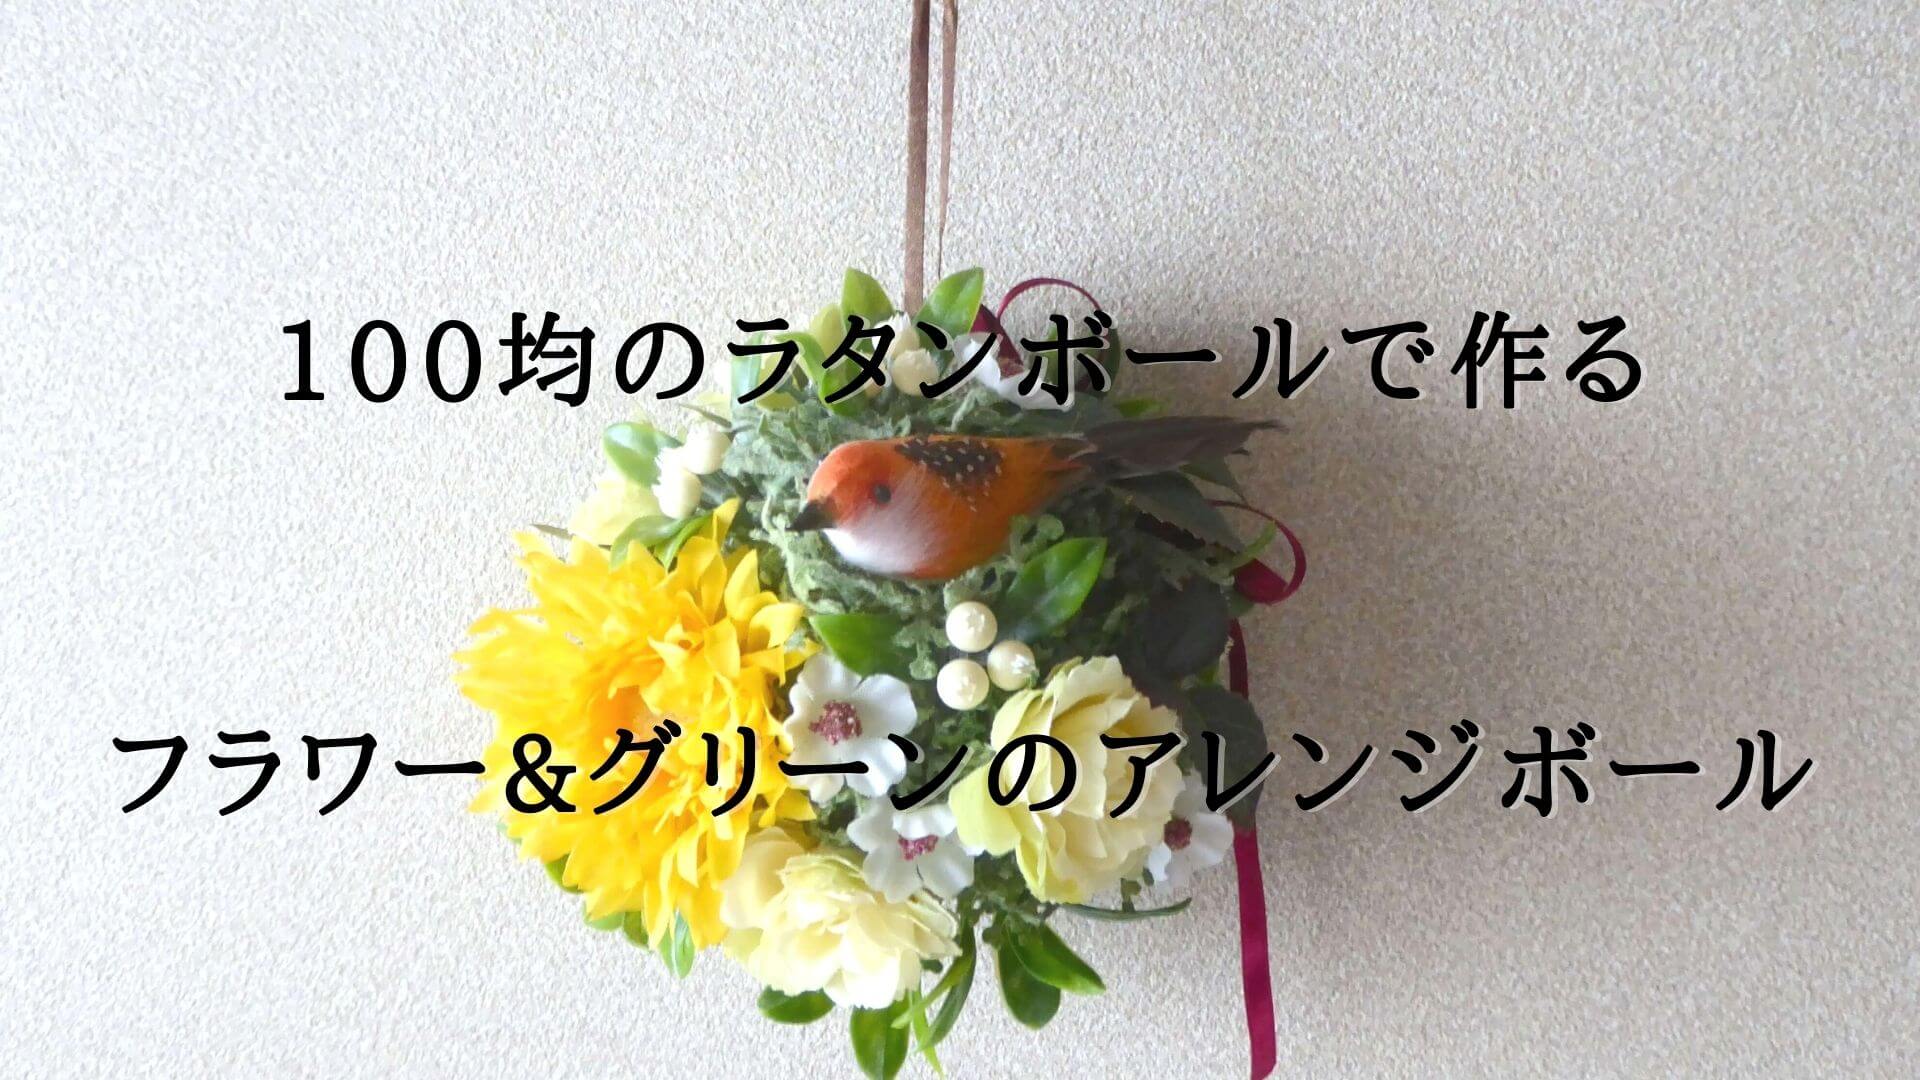 100均のラタンボールで作るフラワー グリーンのアレンジボール 花と雑貨を可愛く飾るブログ